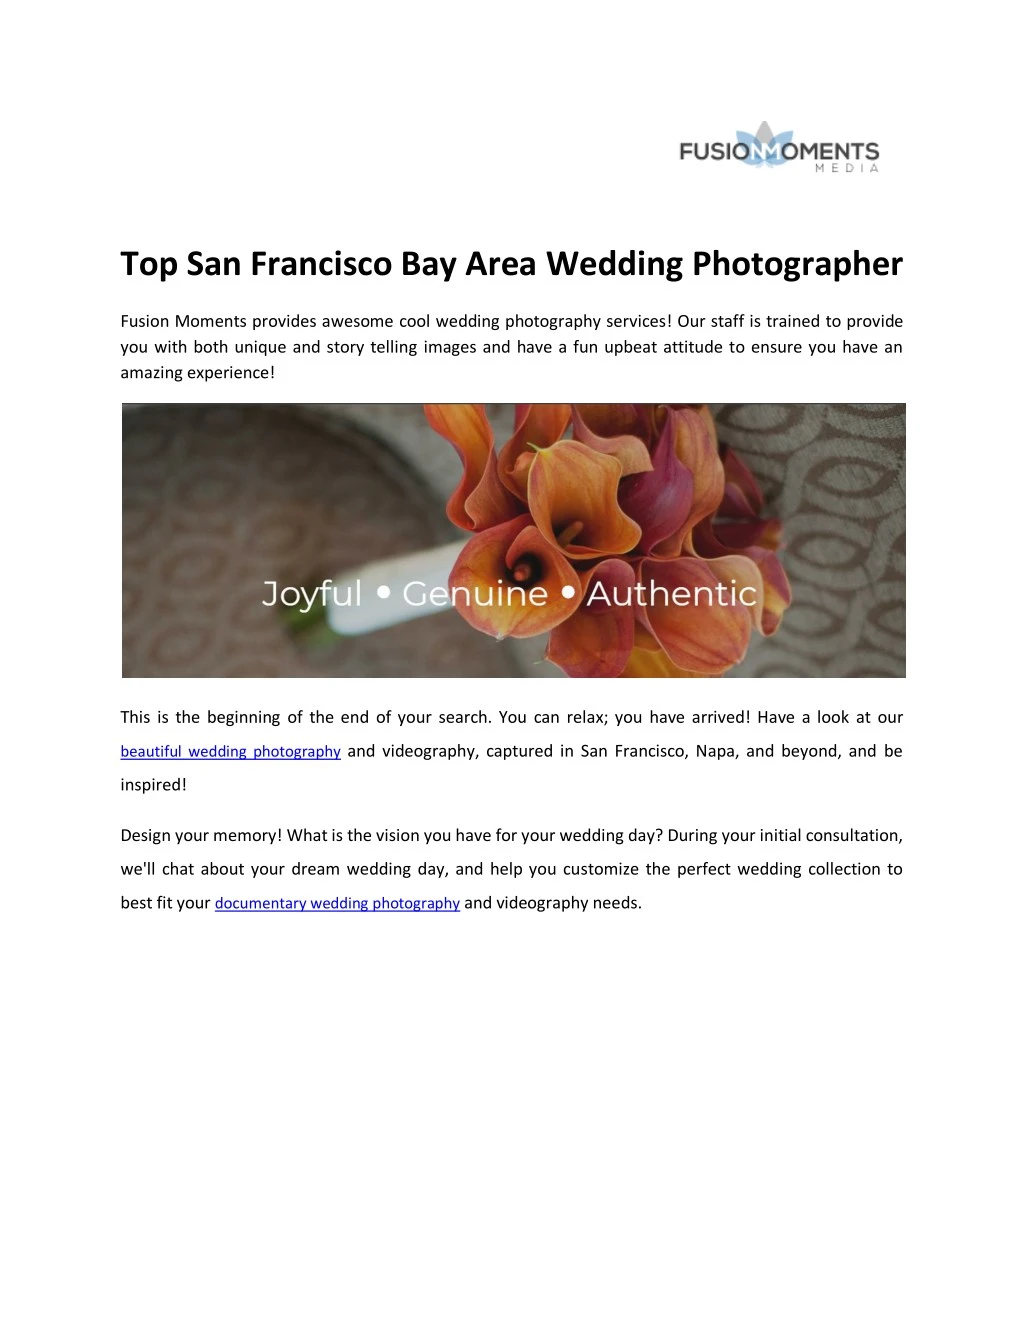 top san francisco bay area wedding photographer